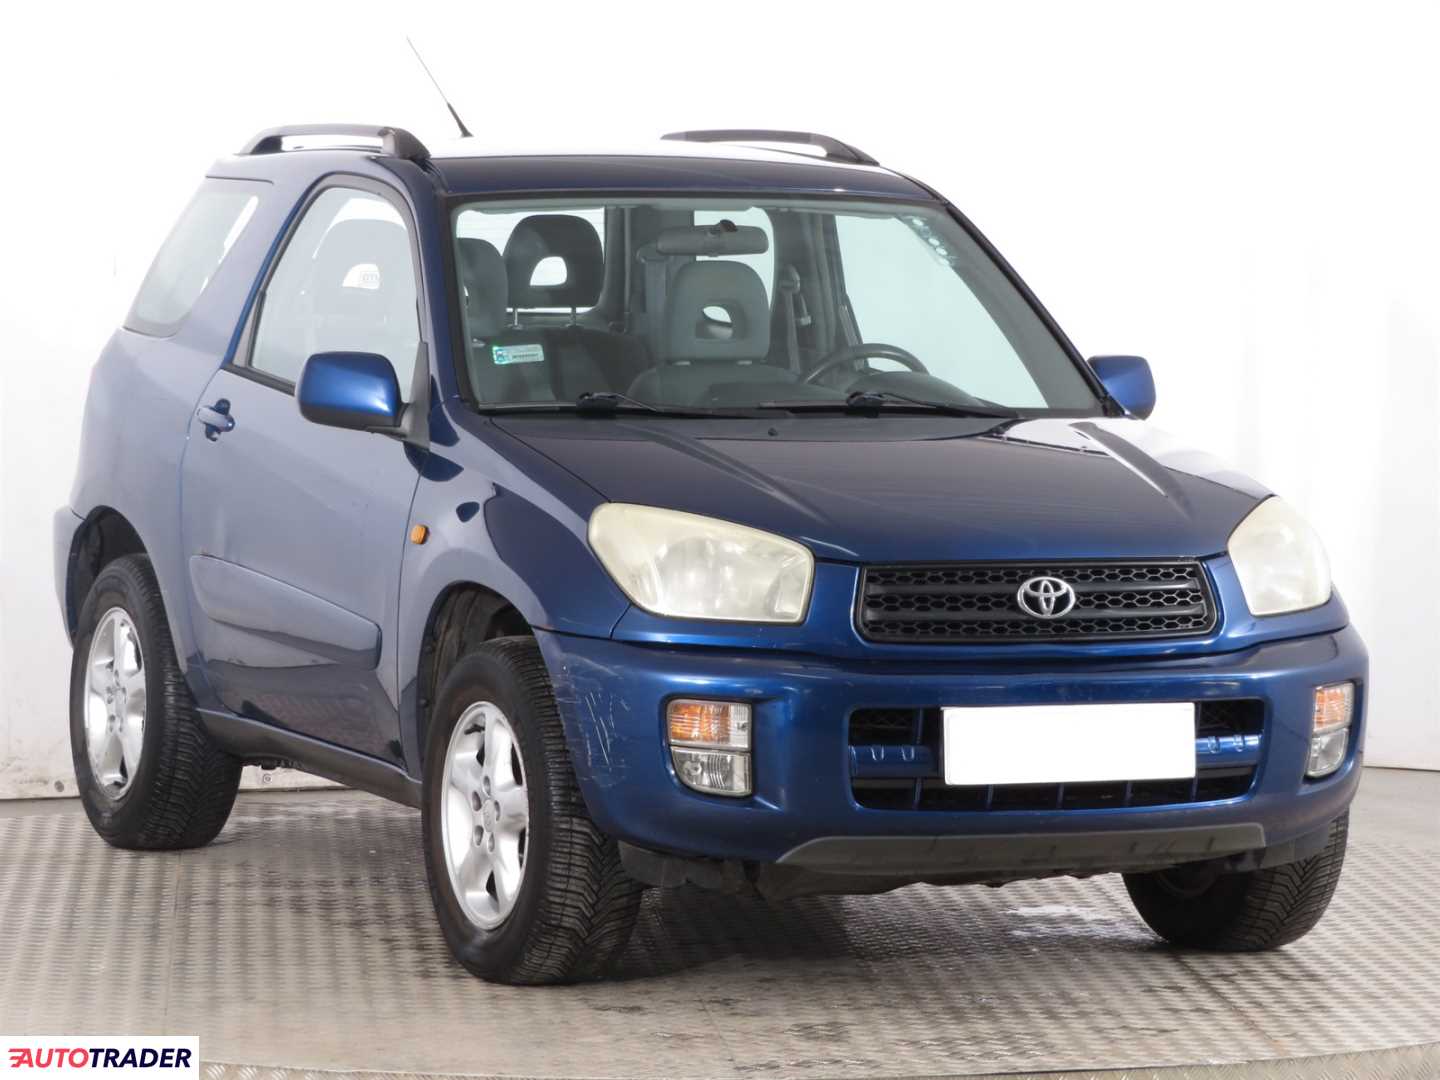 Toyota RAV 4 2002 1.8 123 KM